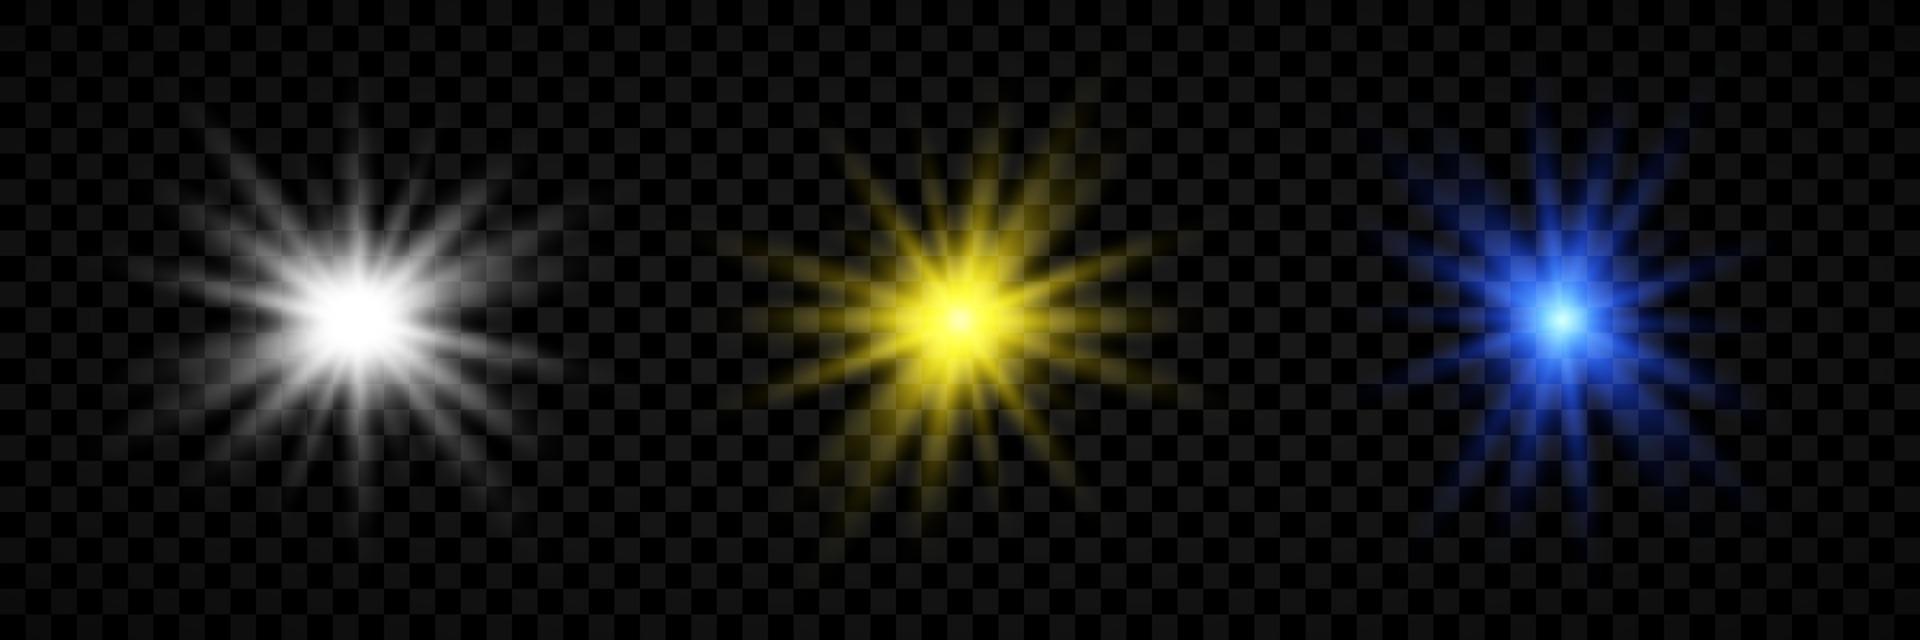 ljus effekt av lins bloss. uppsättning av tre vit, gul och blå lysande lampor starburst effekter med pärlar vektor